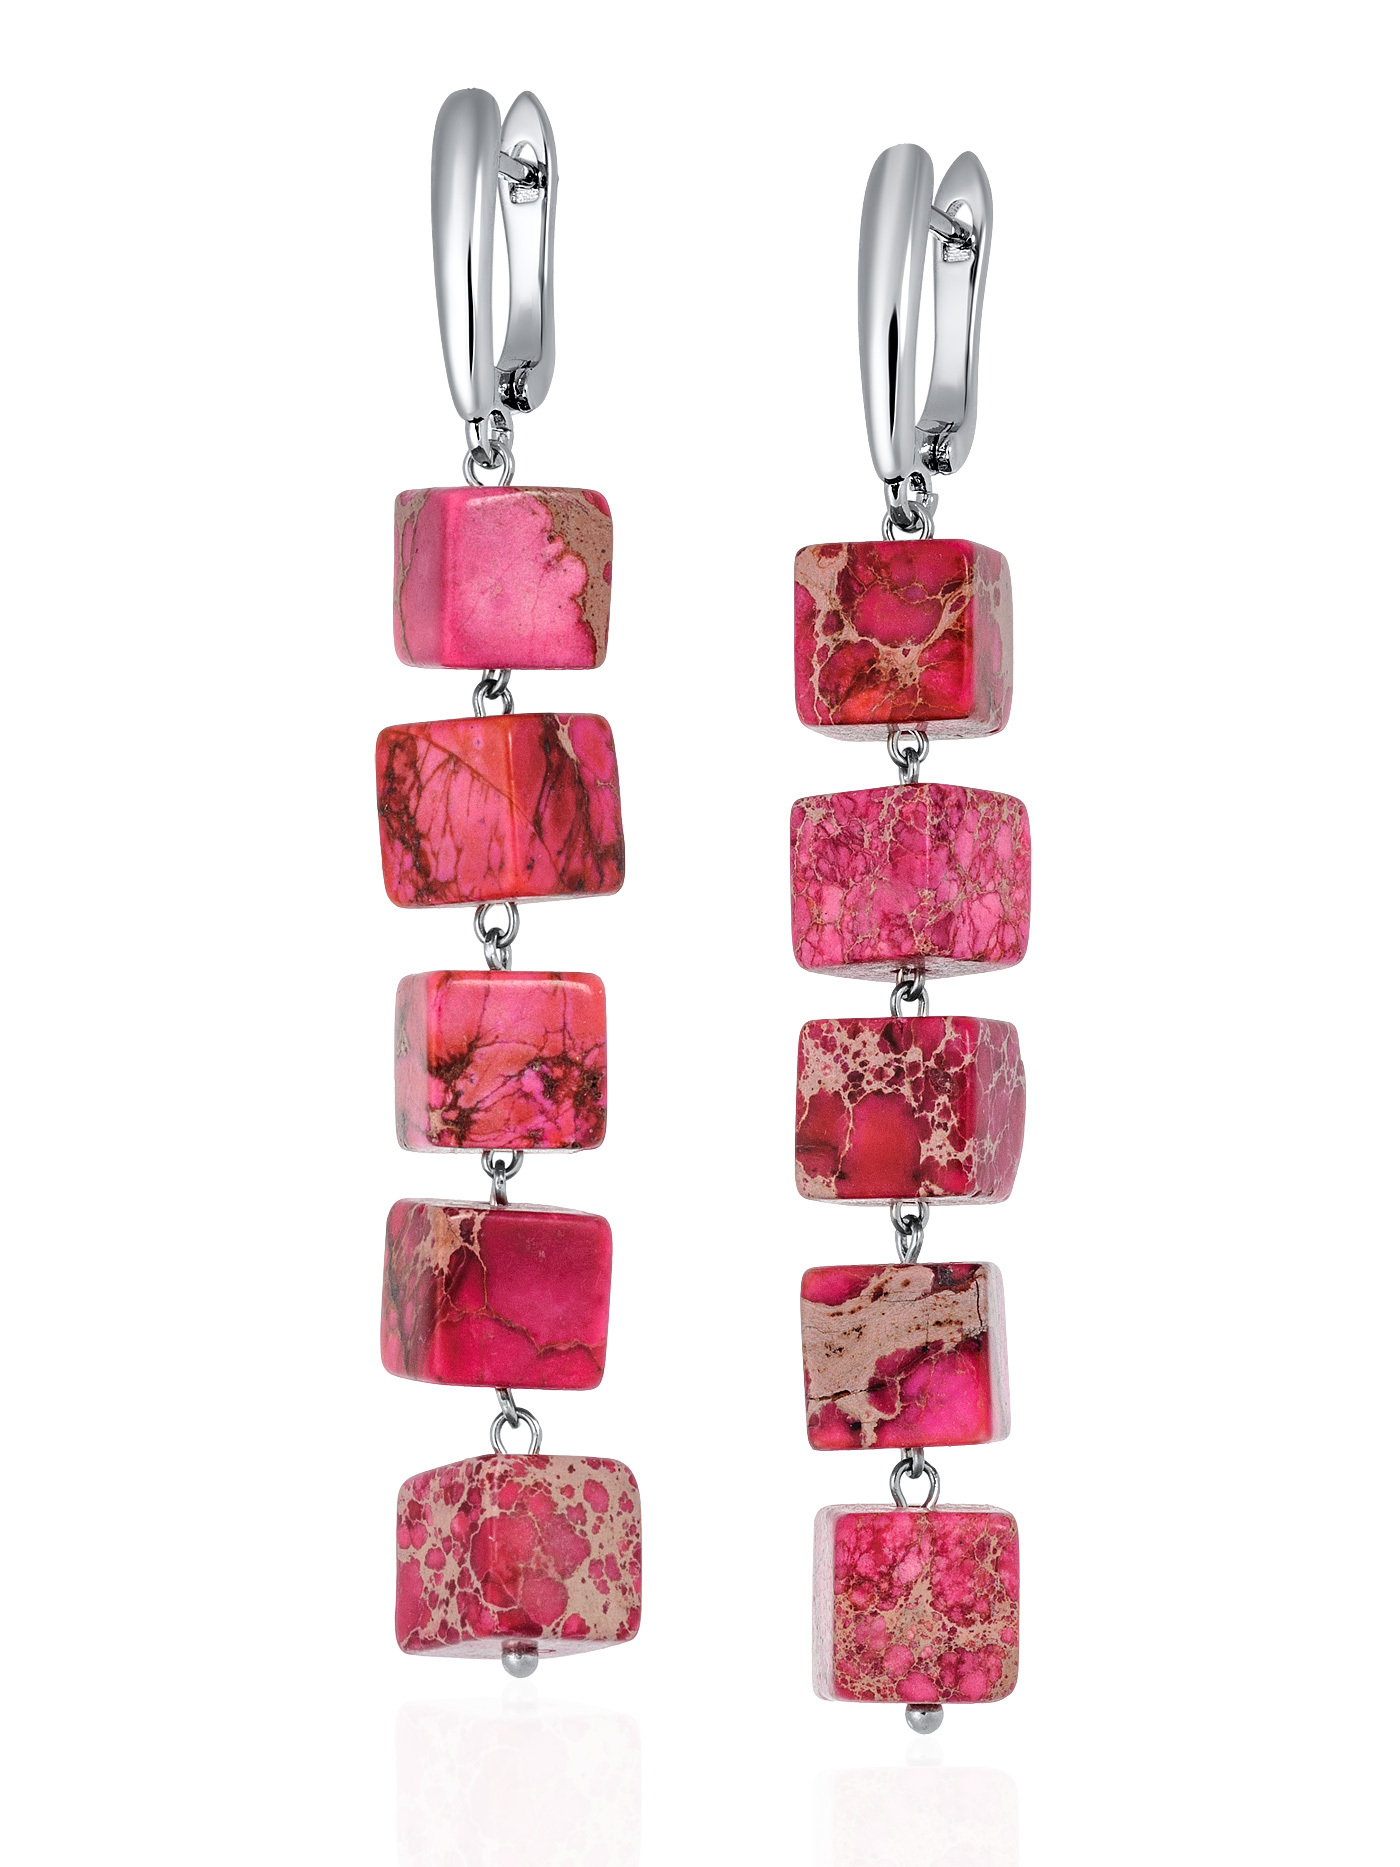 Длинные ярко розовые серьги из натурального, прессованного камня варисцита